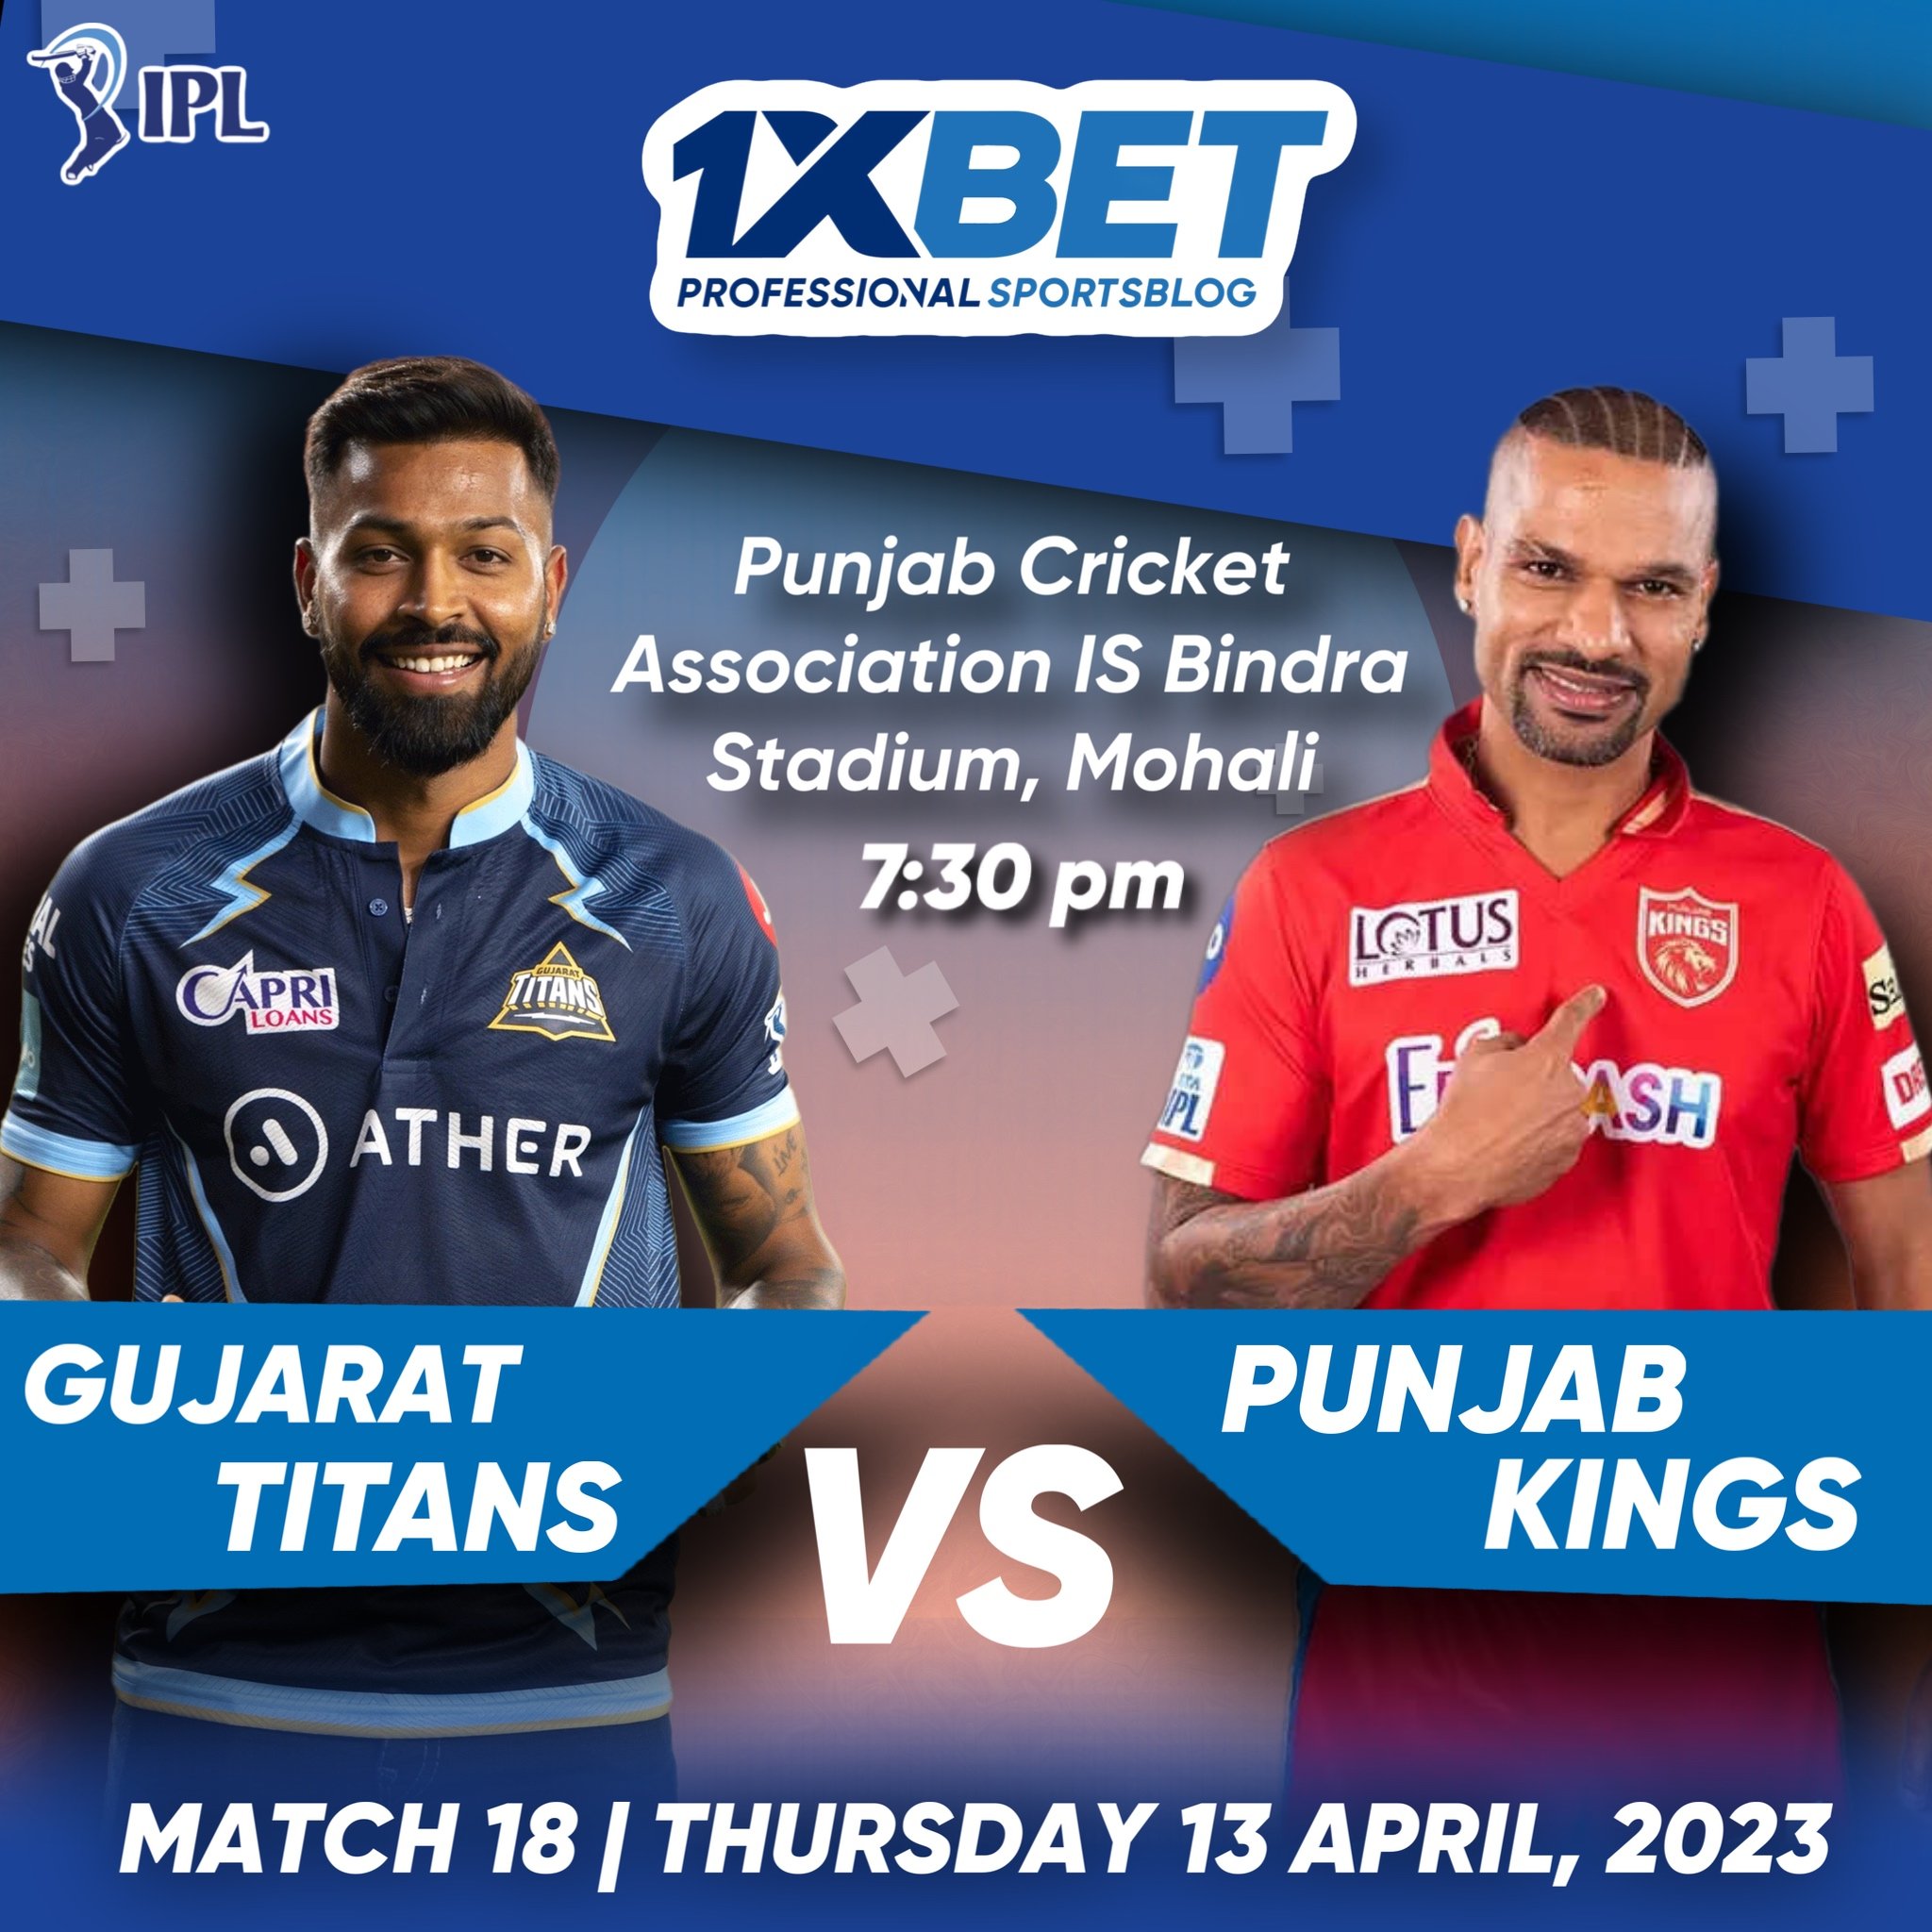 Gujarat Titans vs Punjab Kings, IPL 2023, 18th Match Analysis